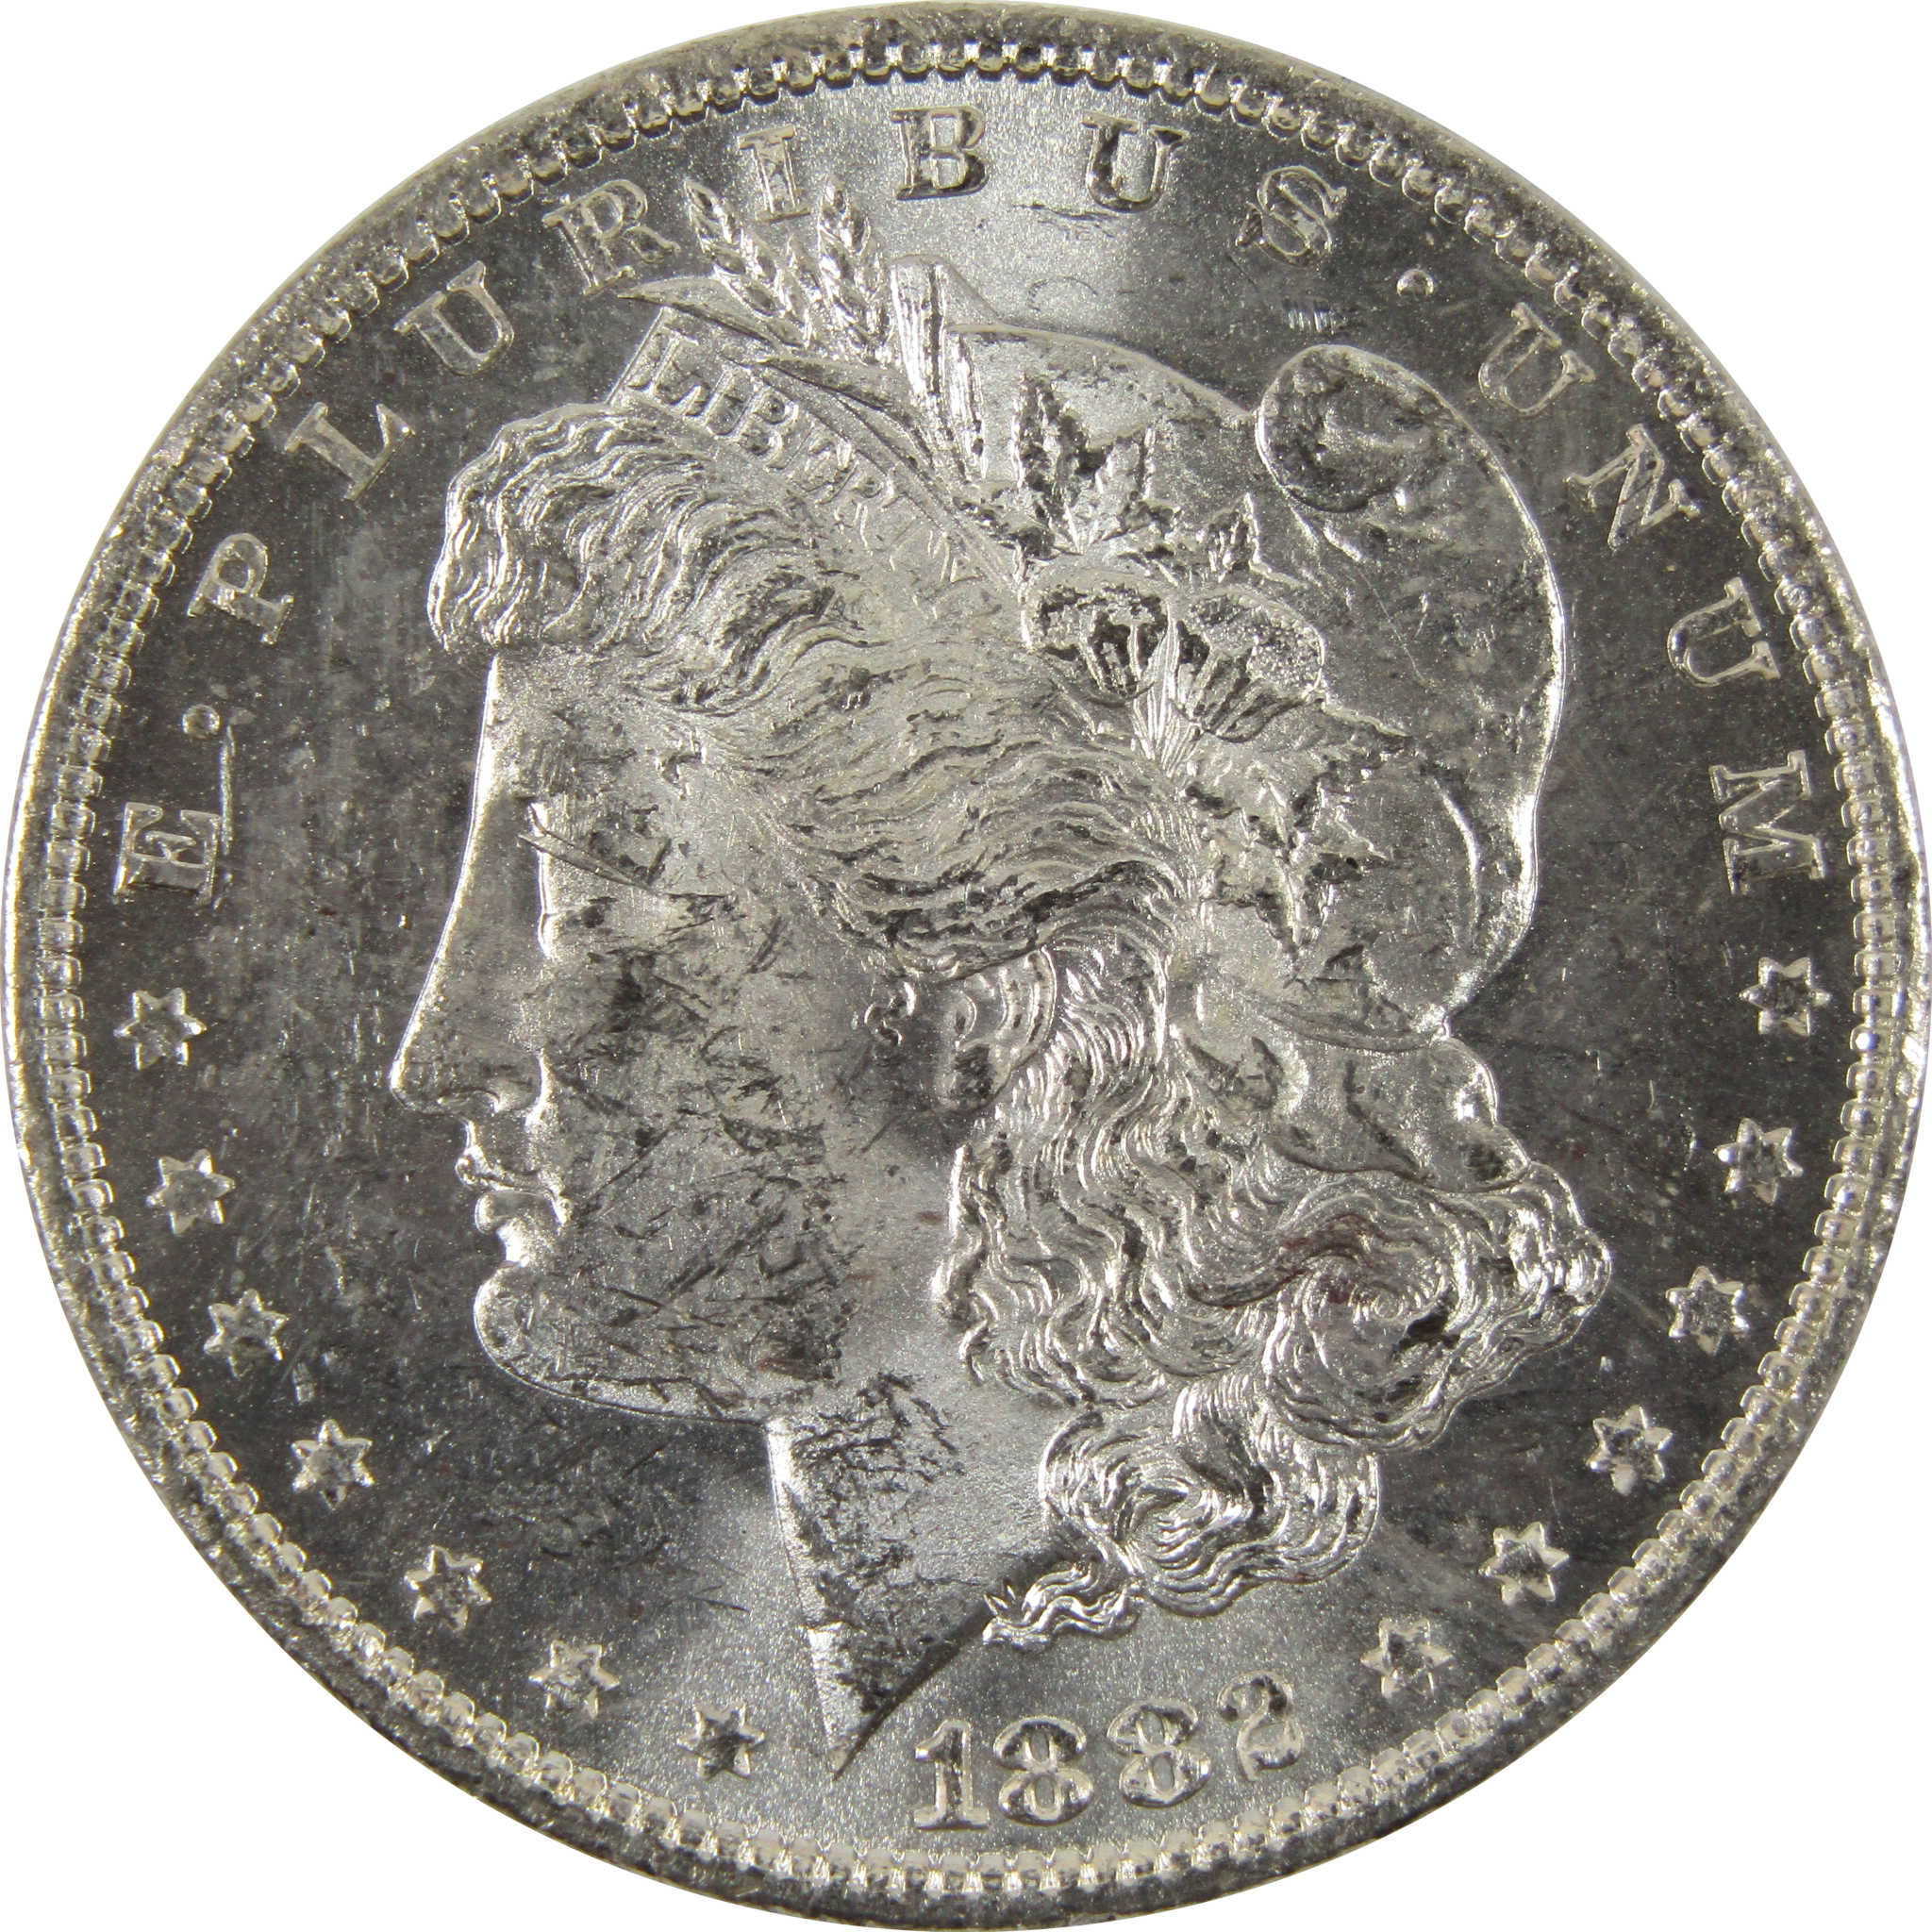 1882 O Morgan Dollar BU Uncirculated 90% Silver $1 Coin SKU:I8820 - Morgan coin - Morgan silver dollar - Morgan silver dollar for sale - Profile Coins &amp; Collectibles